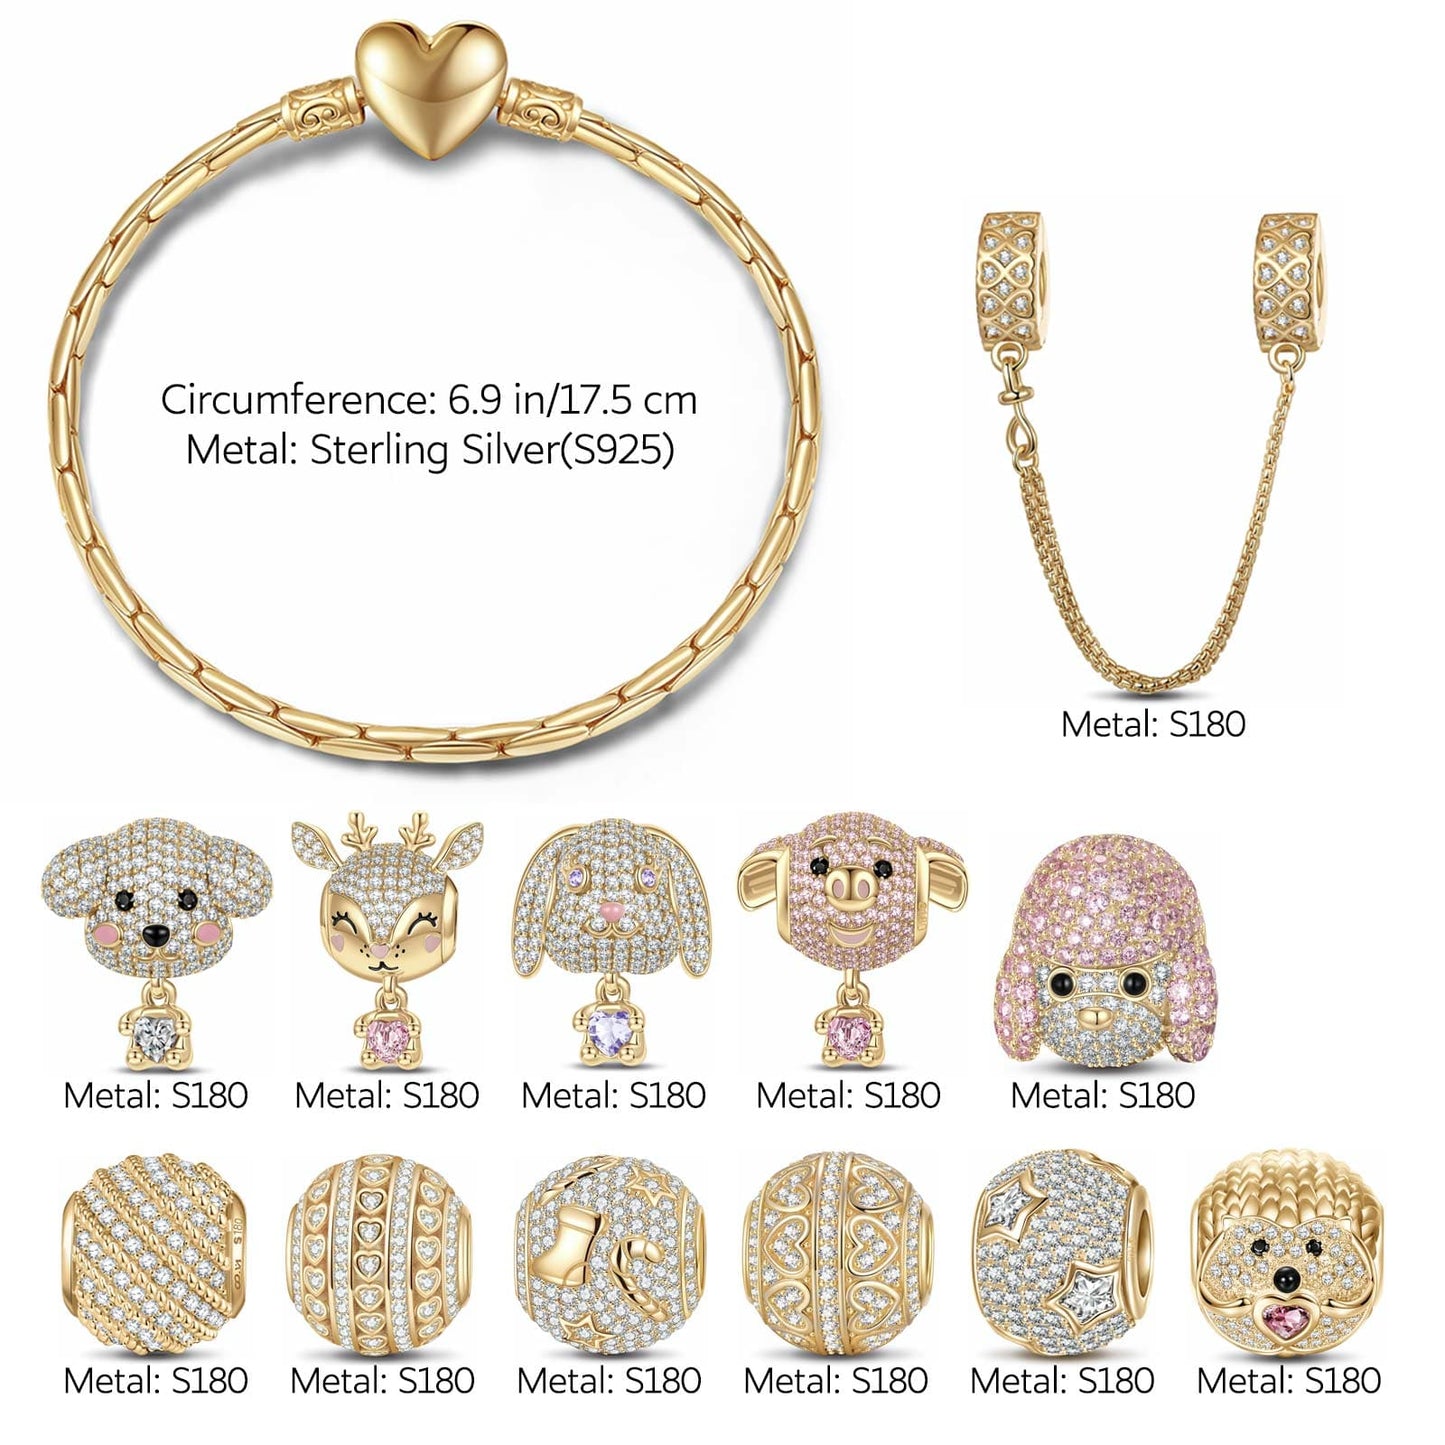 Sterling Silver Adorable Wonderland Animals Charms Bracelet Set In 14K Gold Plated